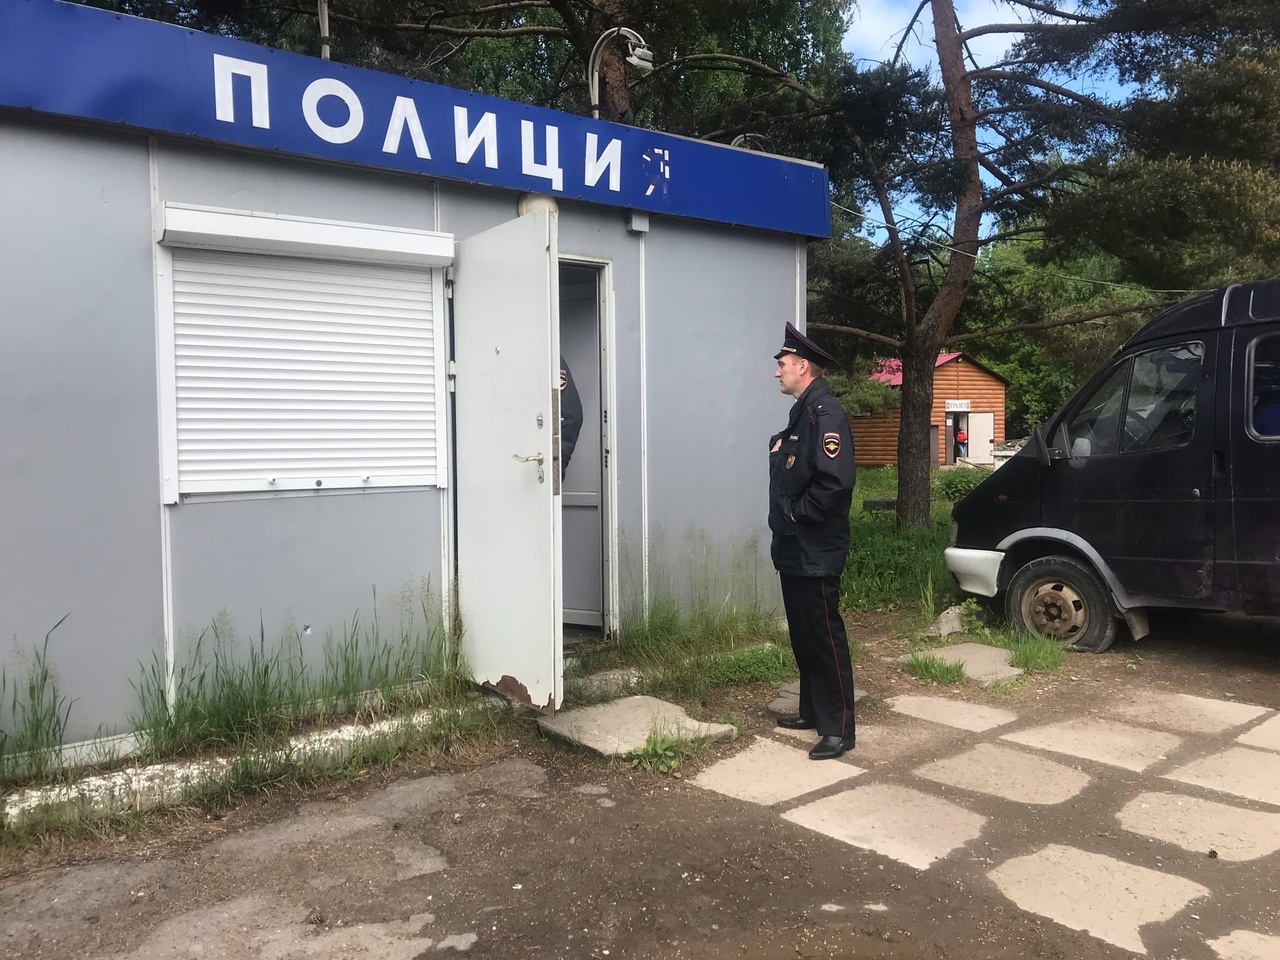 Директора кировского предприятия подозревают в получении взятки